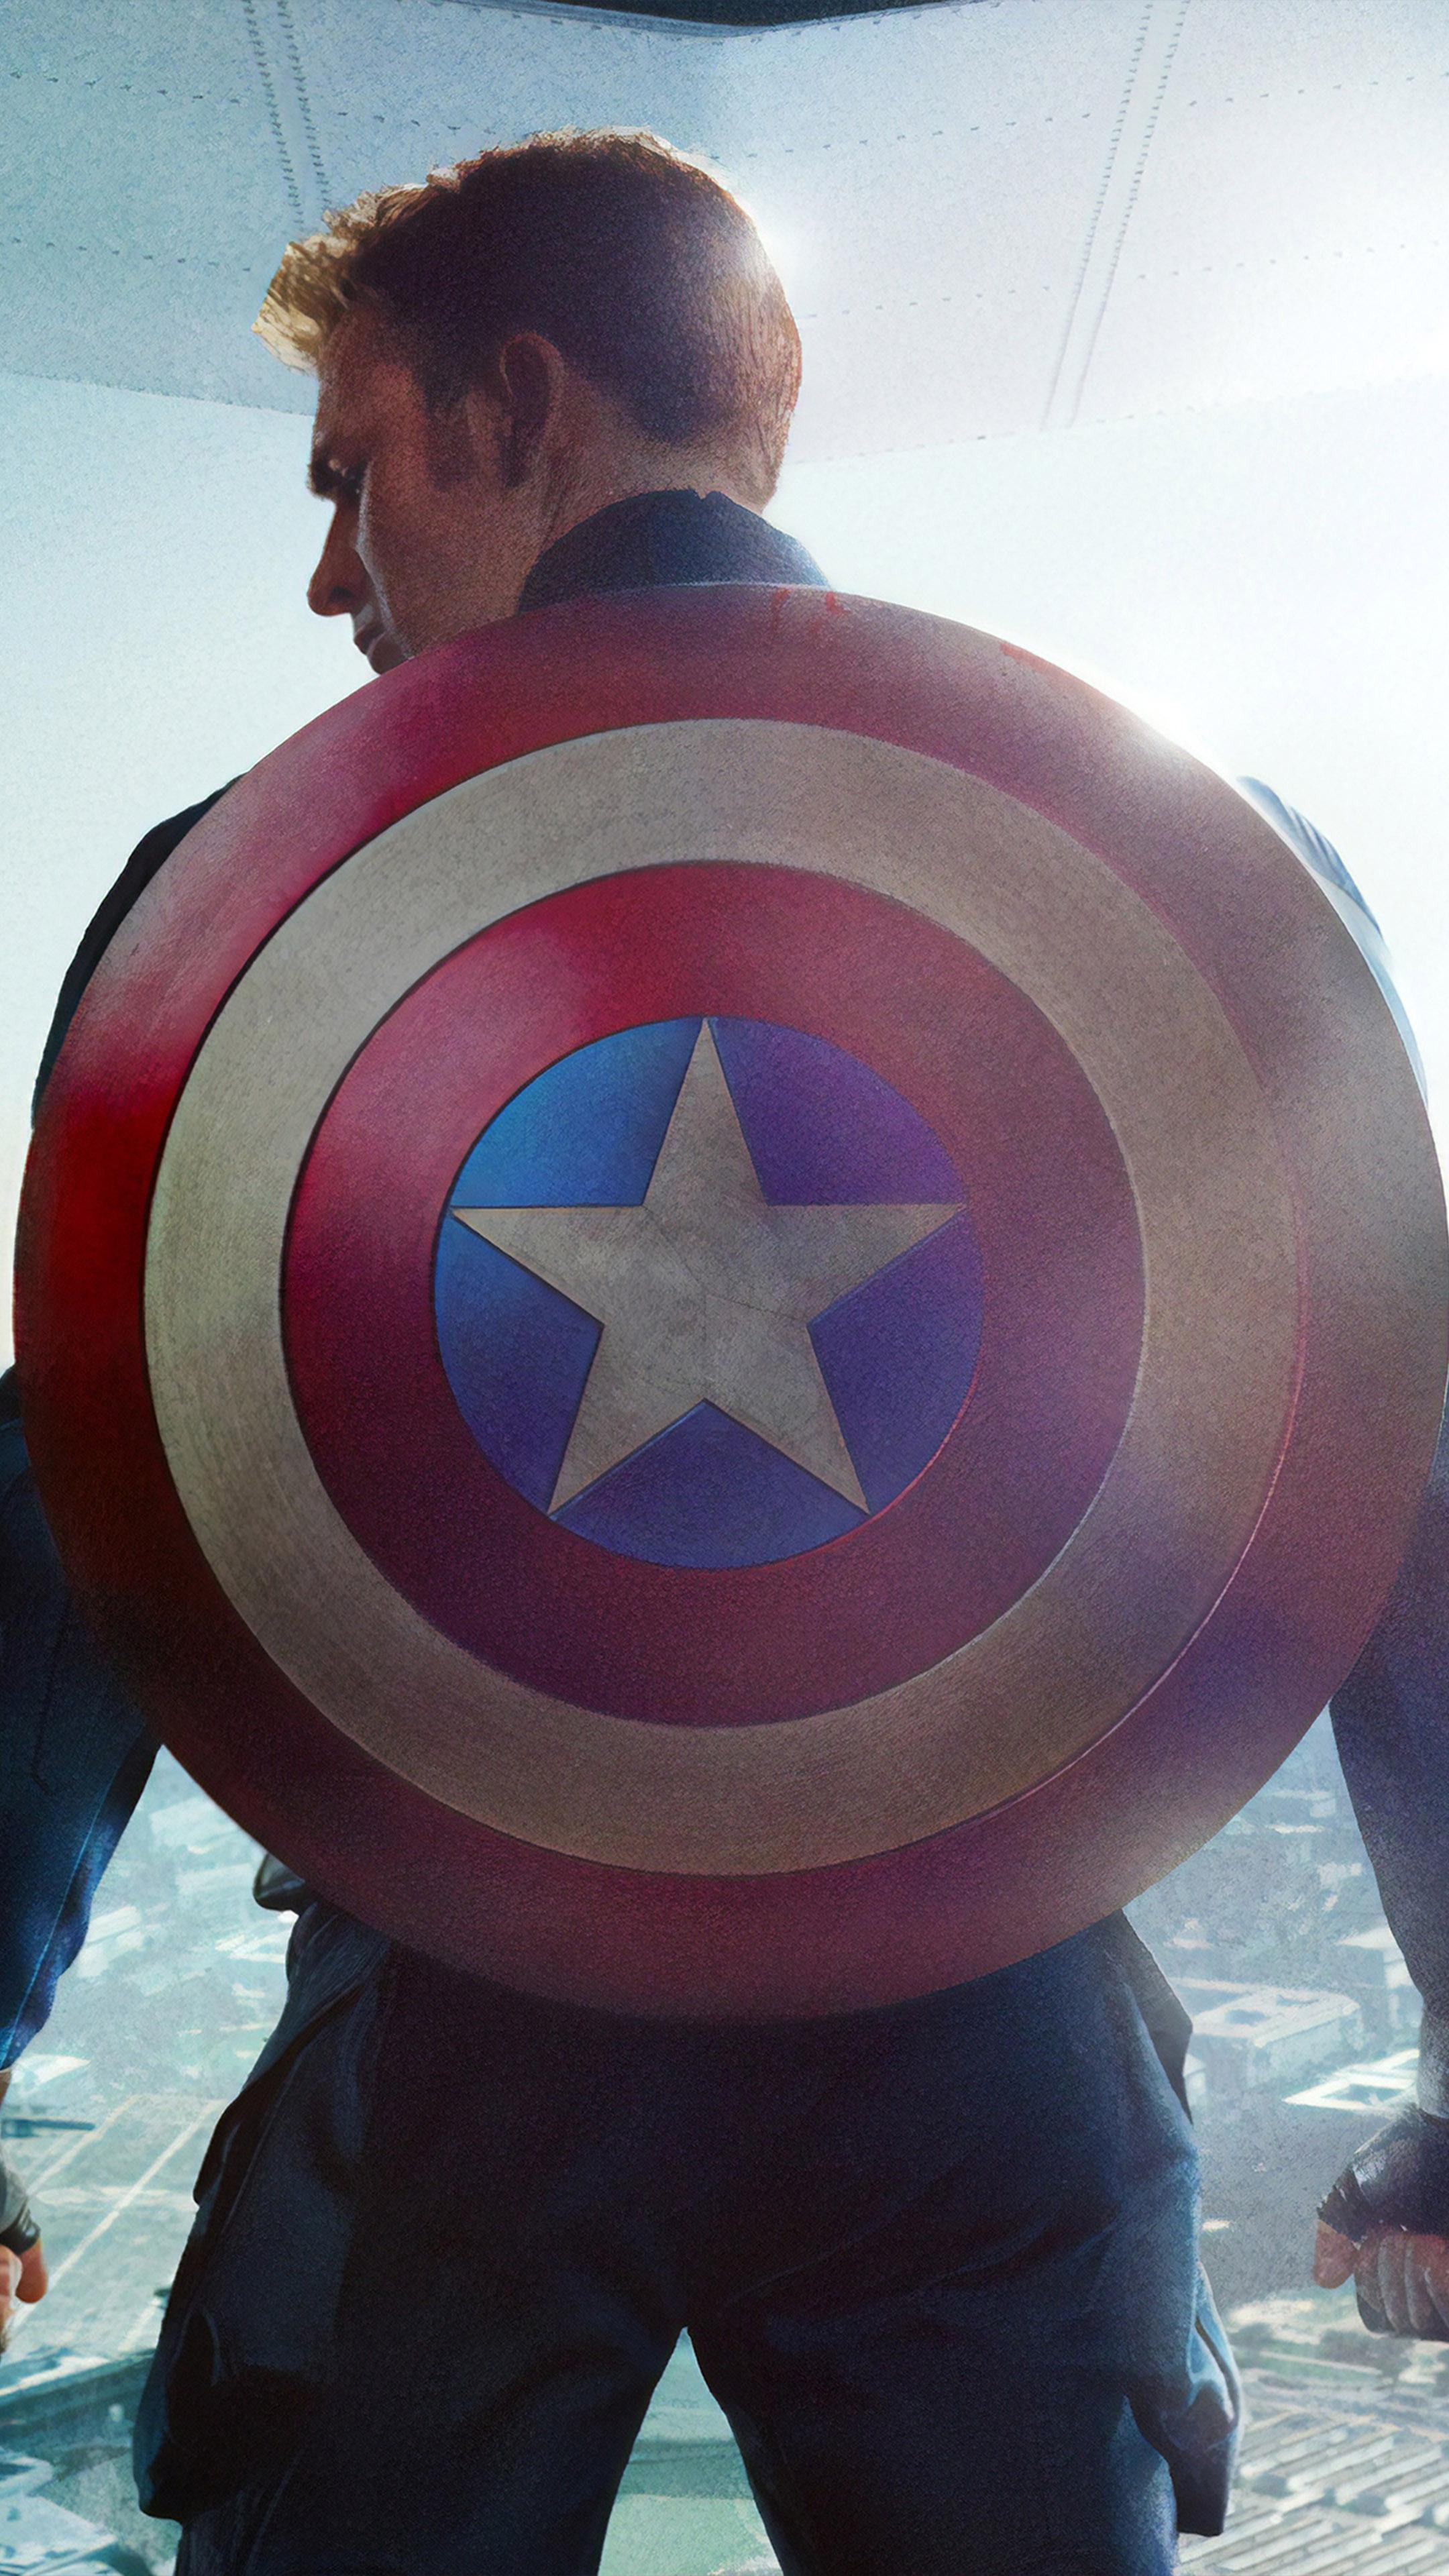 عکس استوک کریس ایوانز با نقش بسیار معروف کاپیتان آمریکا